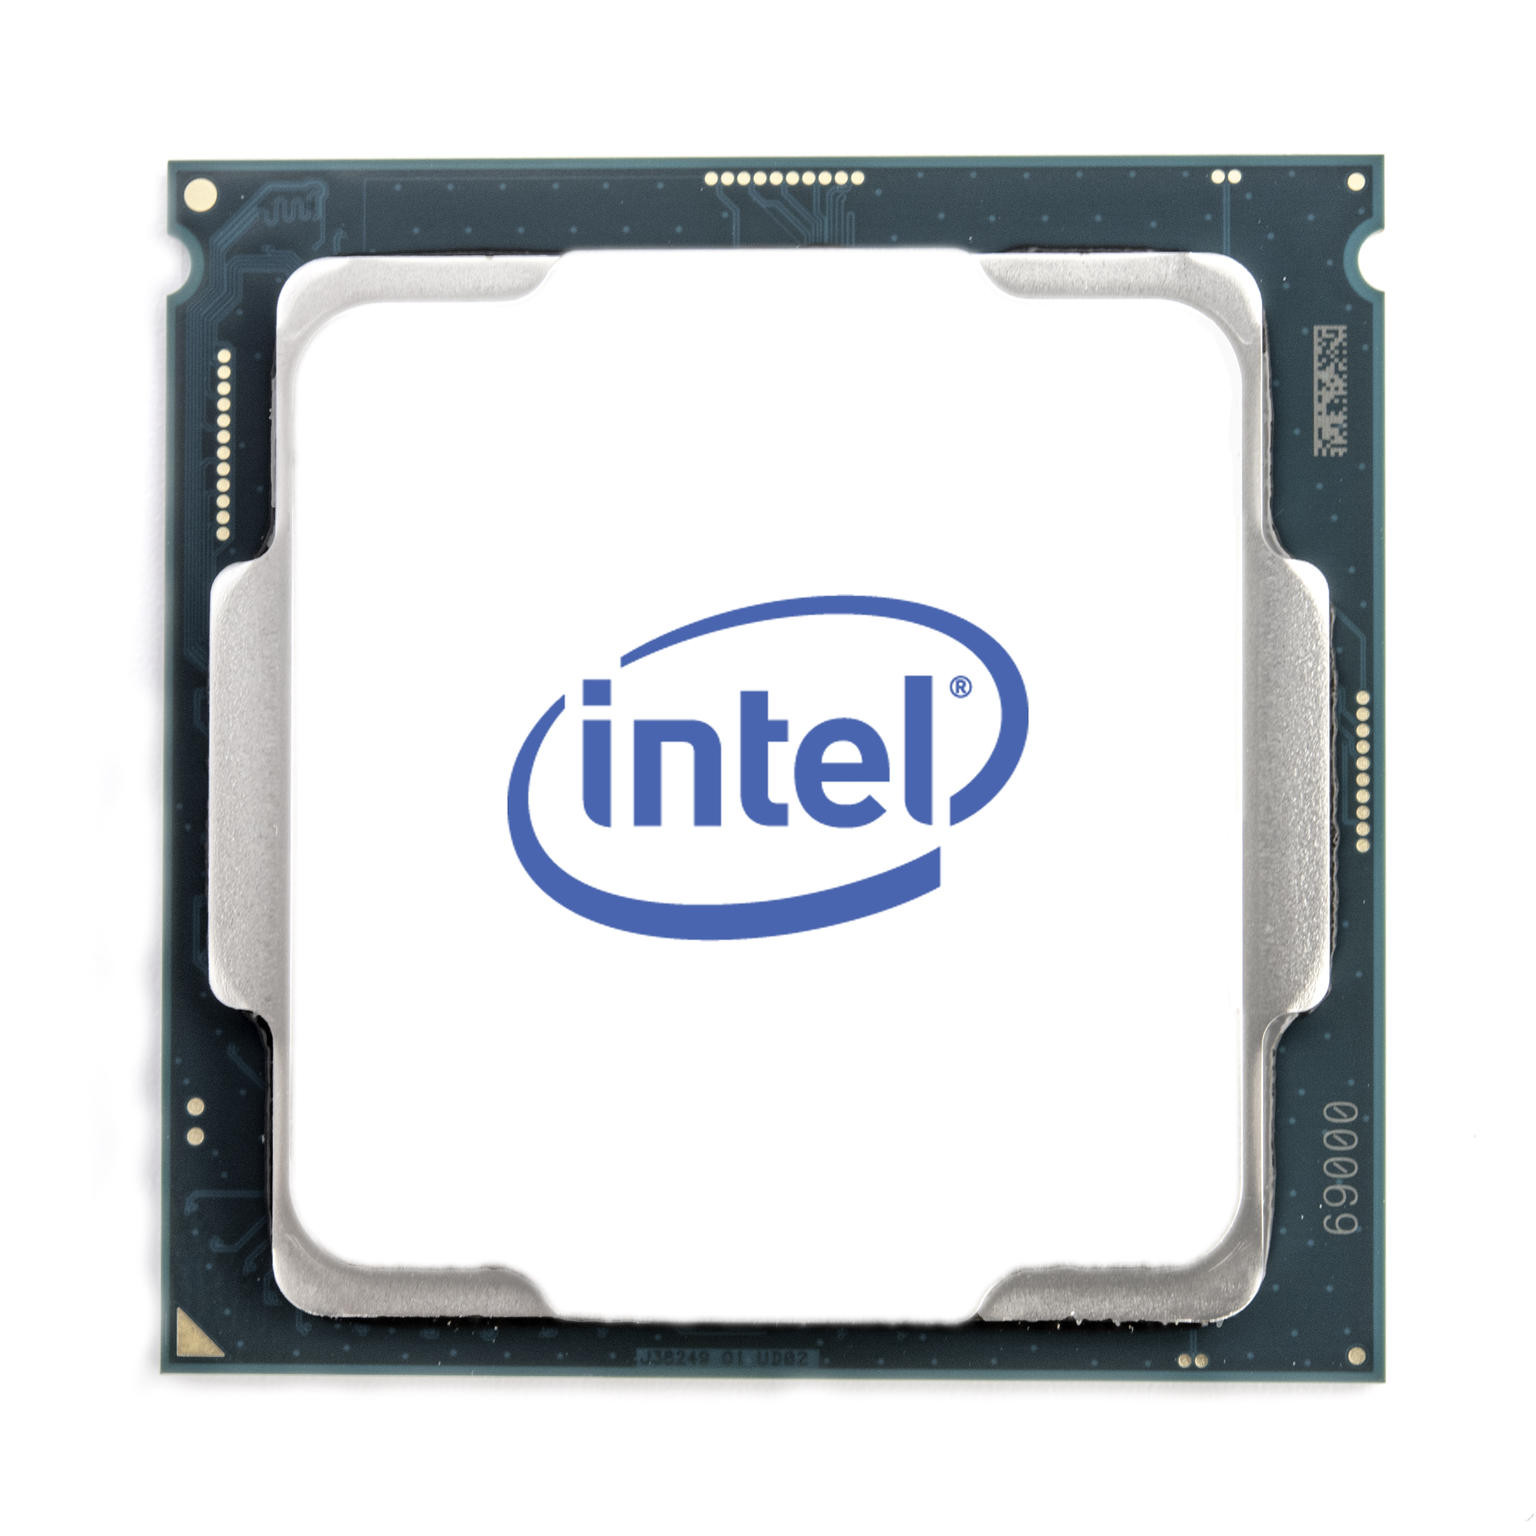 Intel Hexa Core i5-10600KF processor